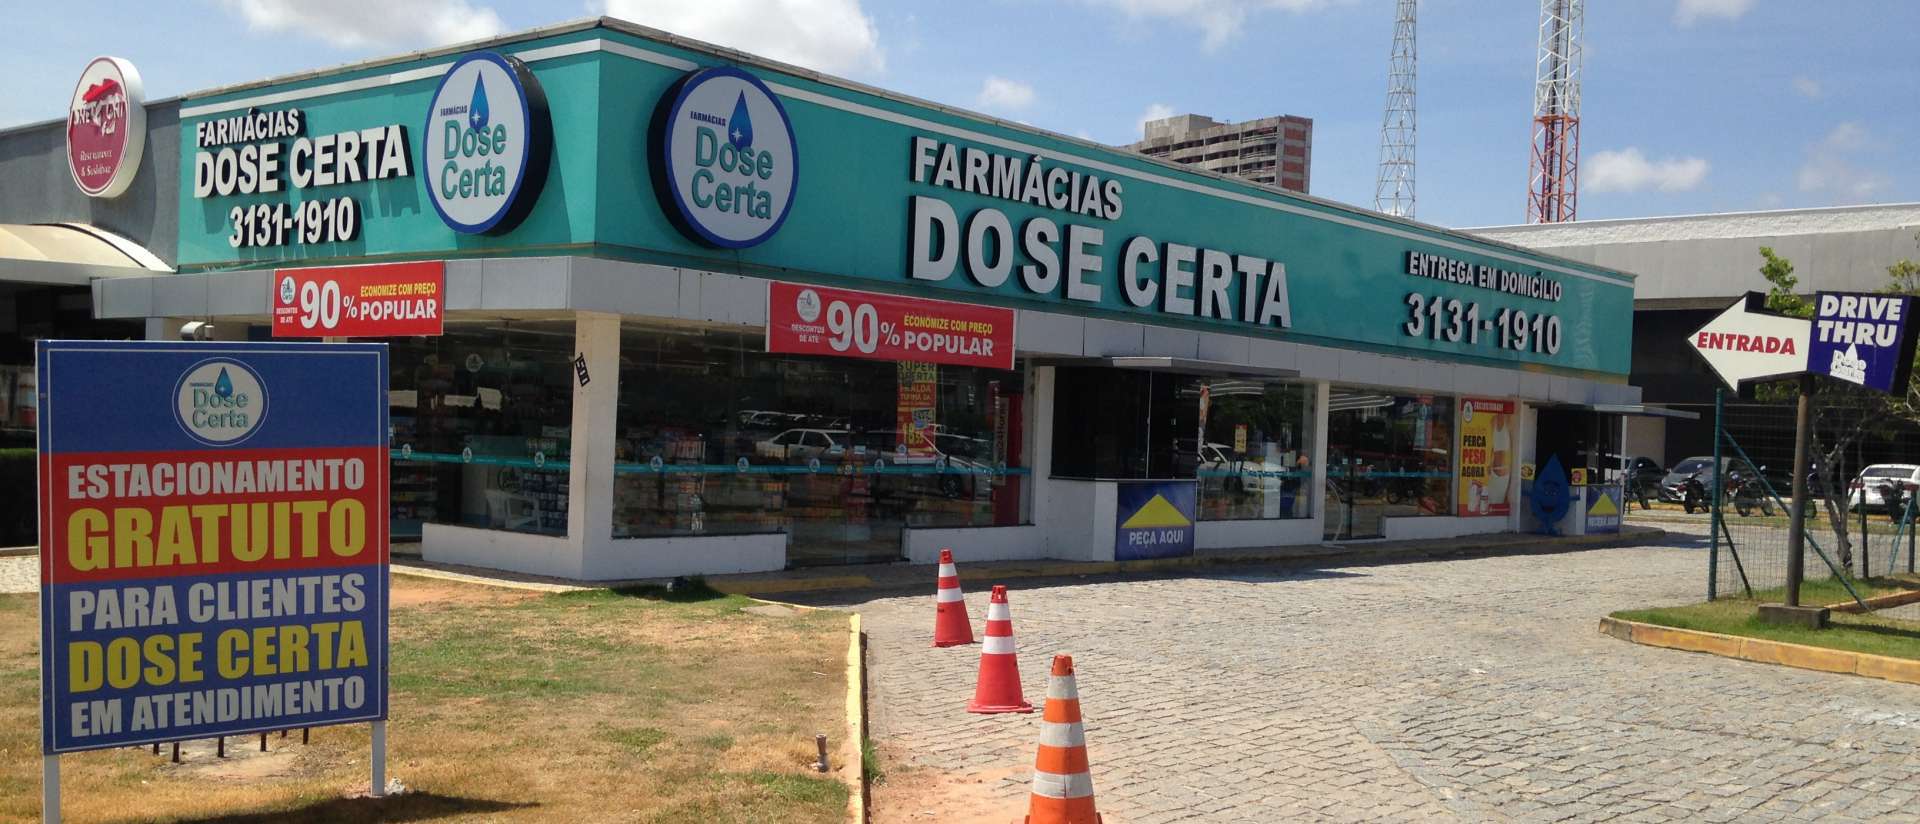 ￼REDE de farmácias Dose Certa tem lojas em Fortaleza e Região Metropolitana (Foto: DIVULGAÇÃO)